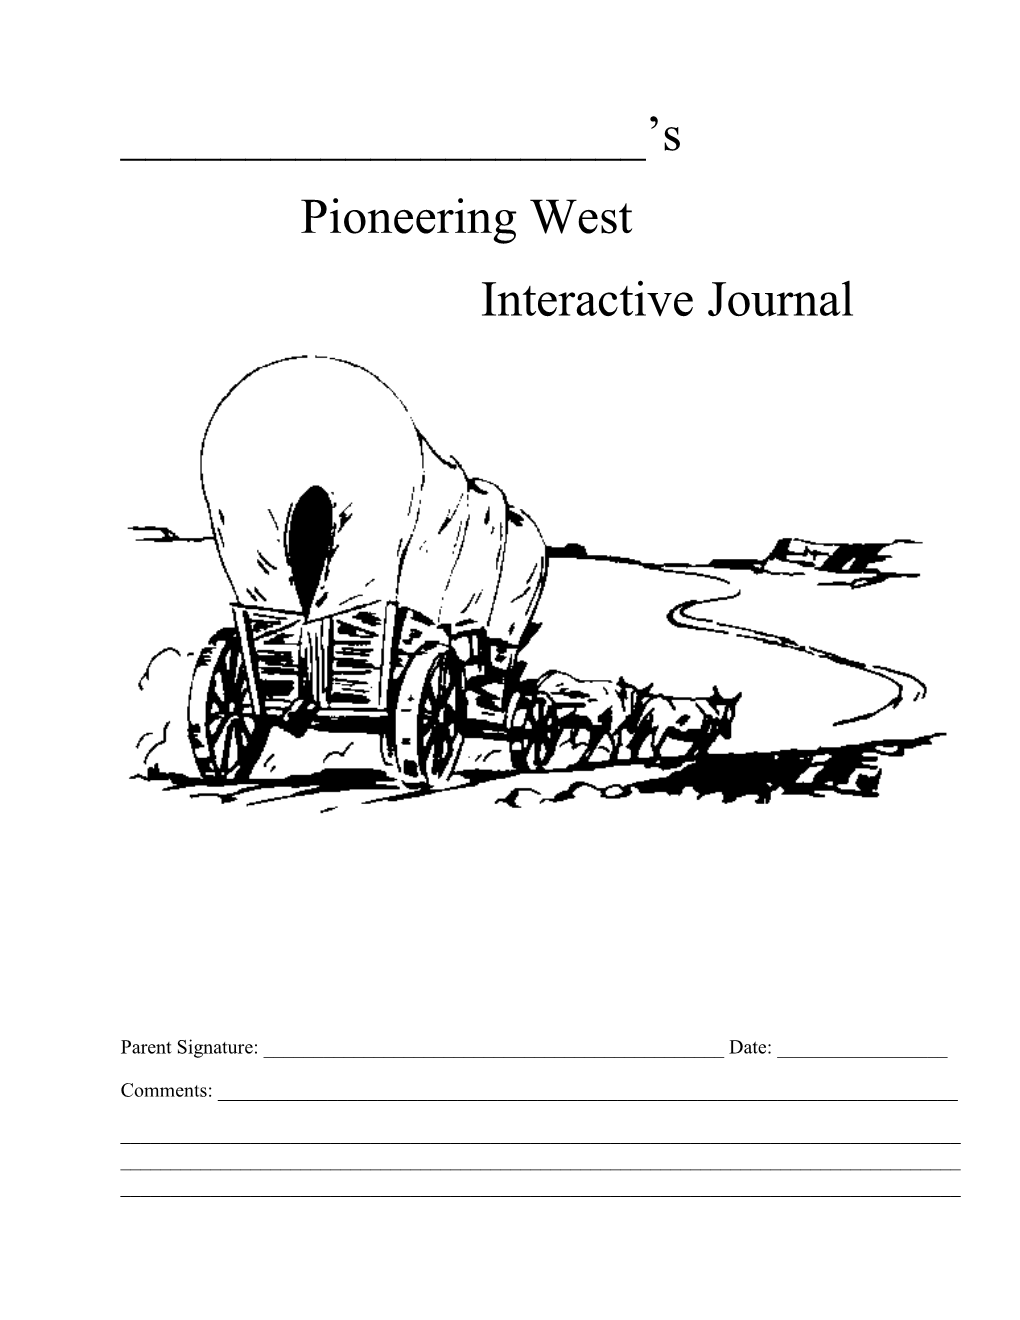 Pioneering West Interactive Journal